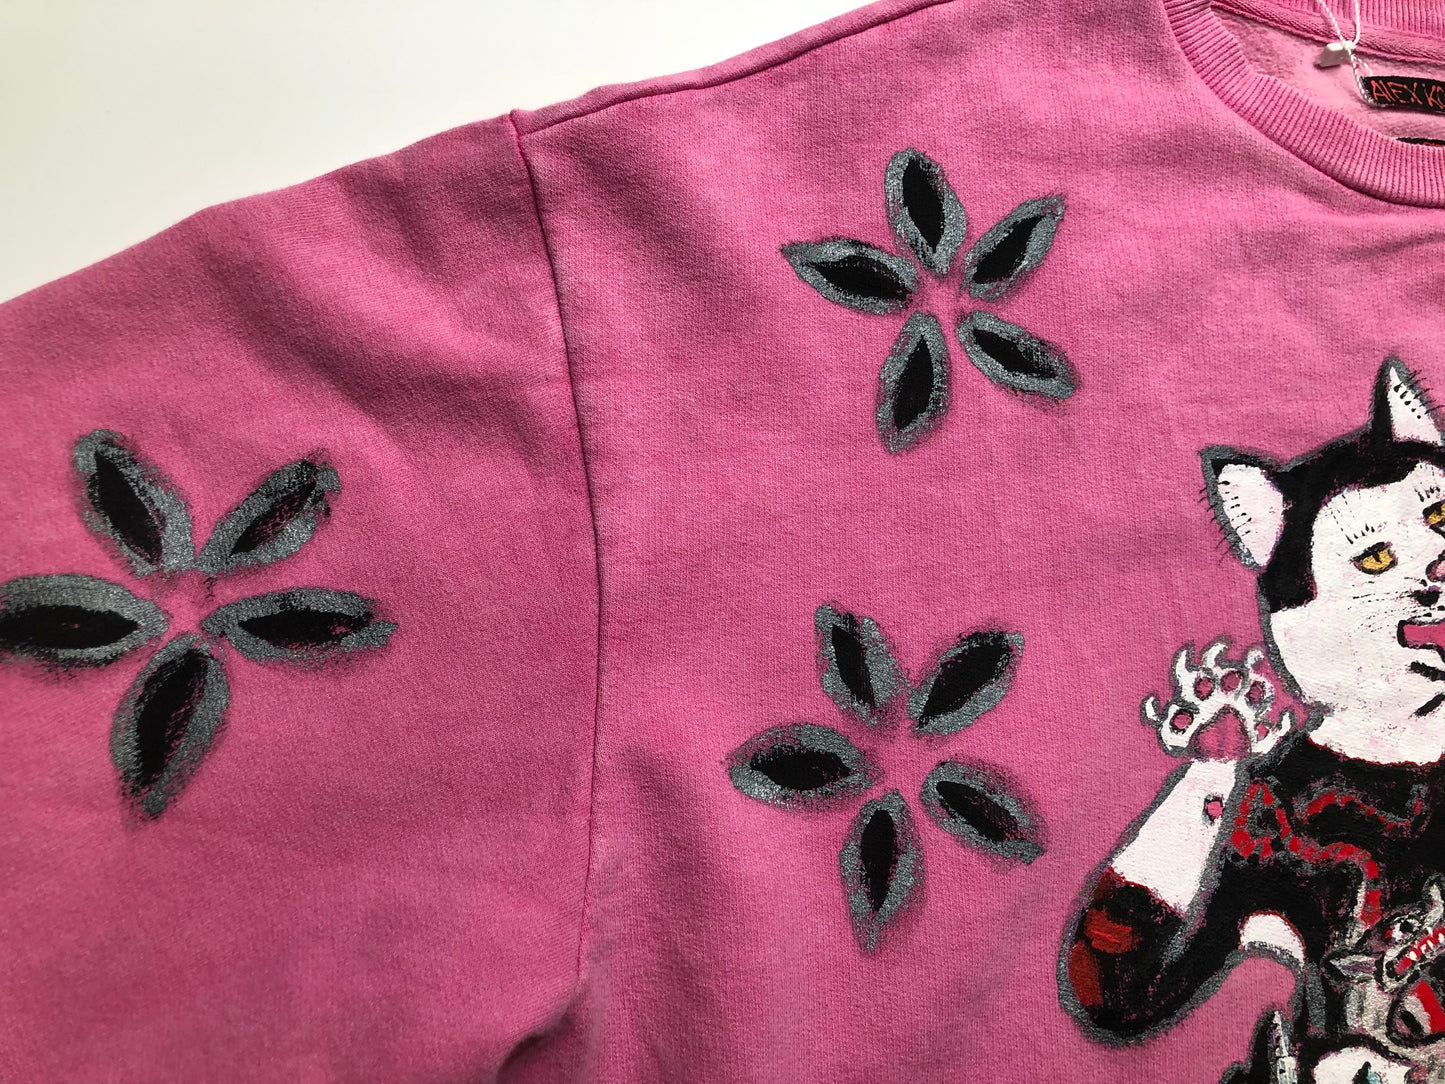 Women's sweatshirt selfie kitties pattern details cats with tattoos